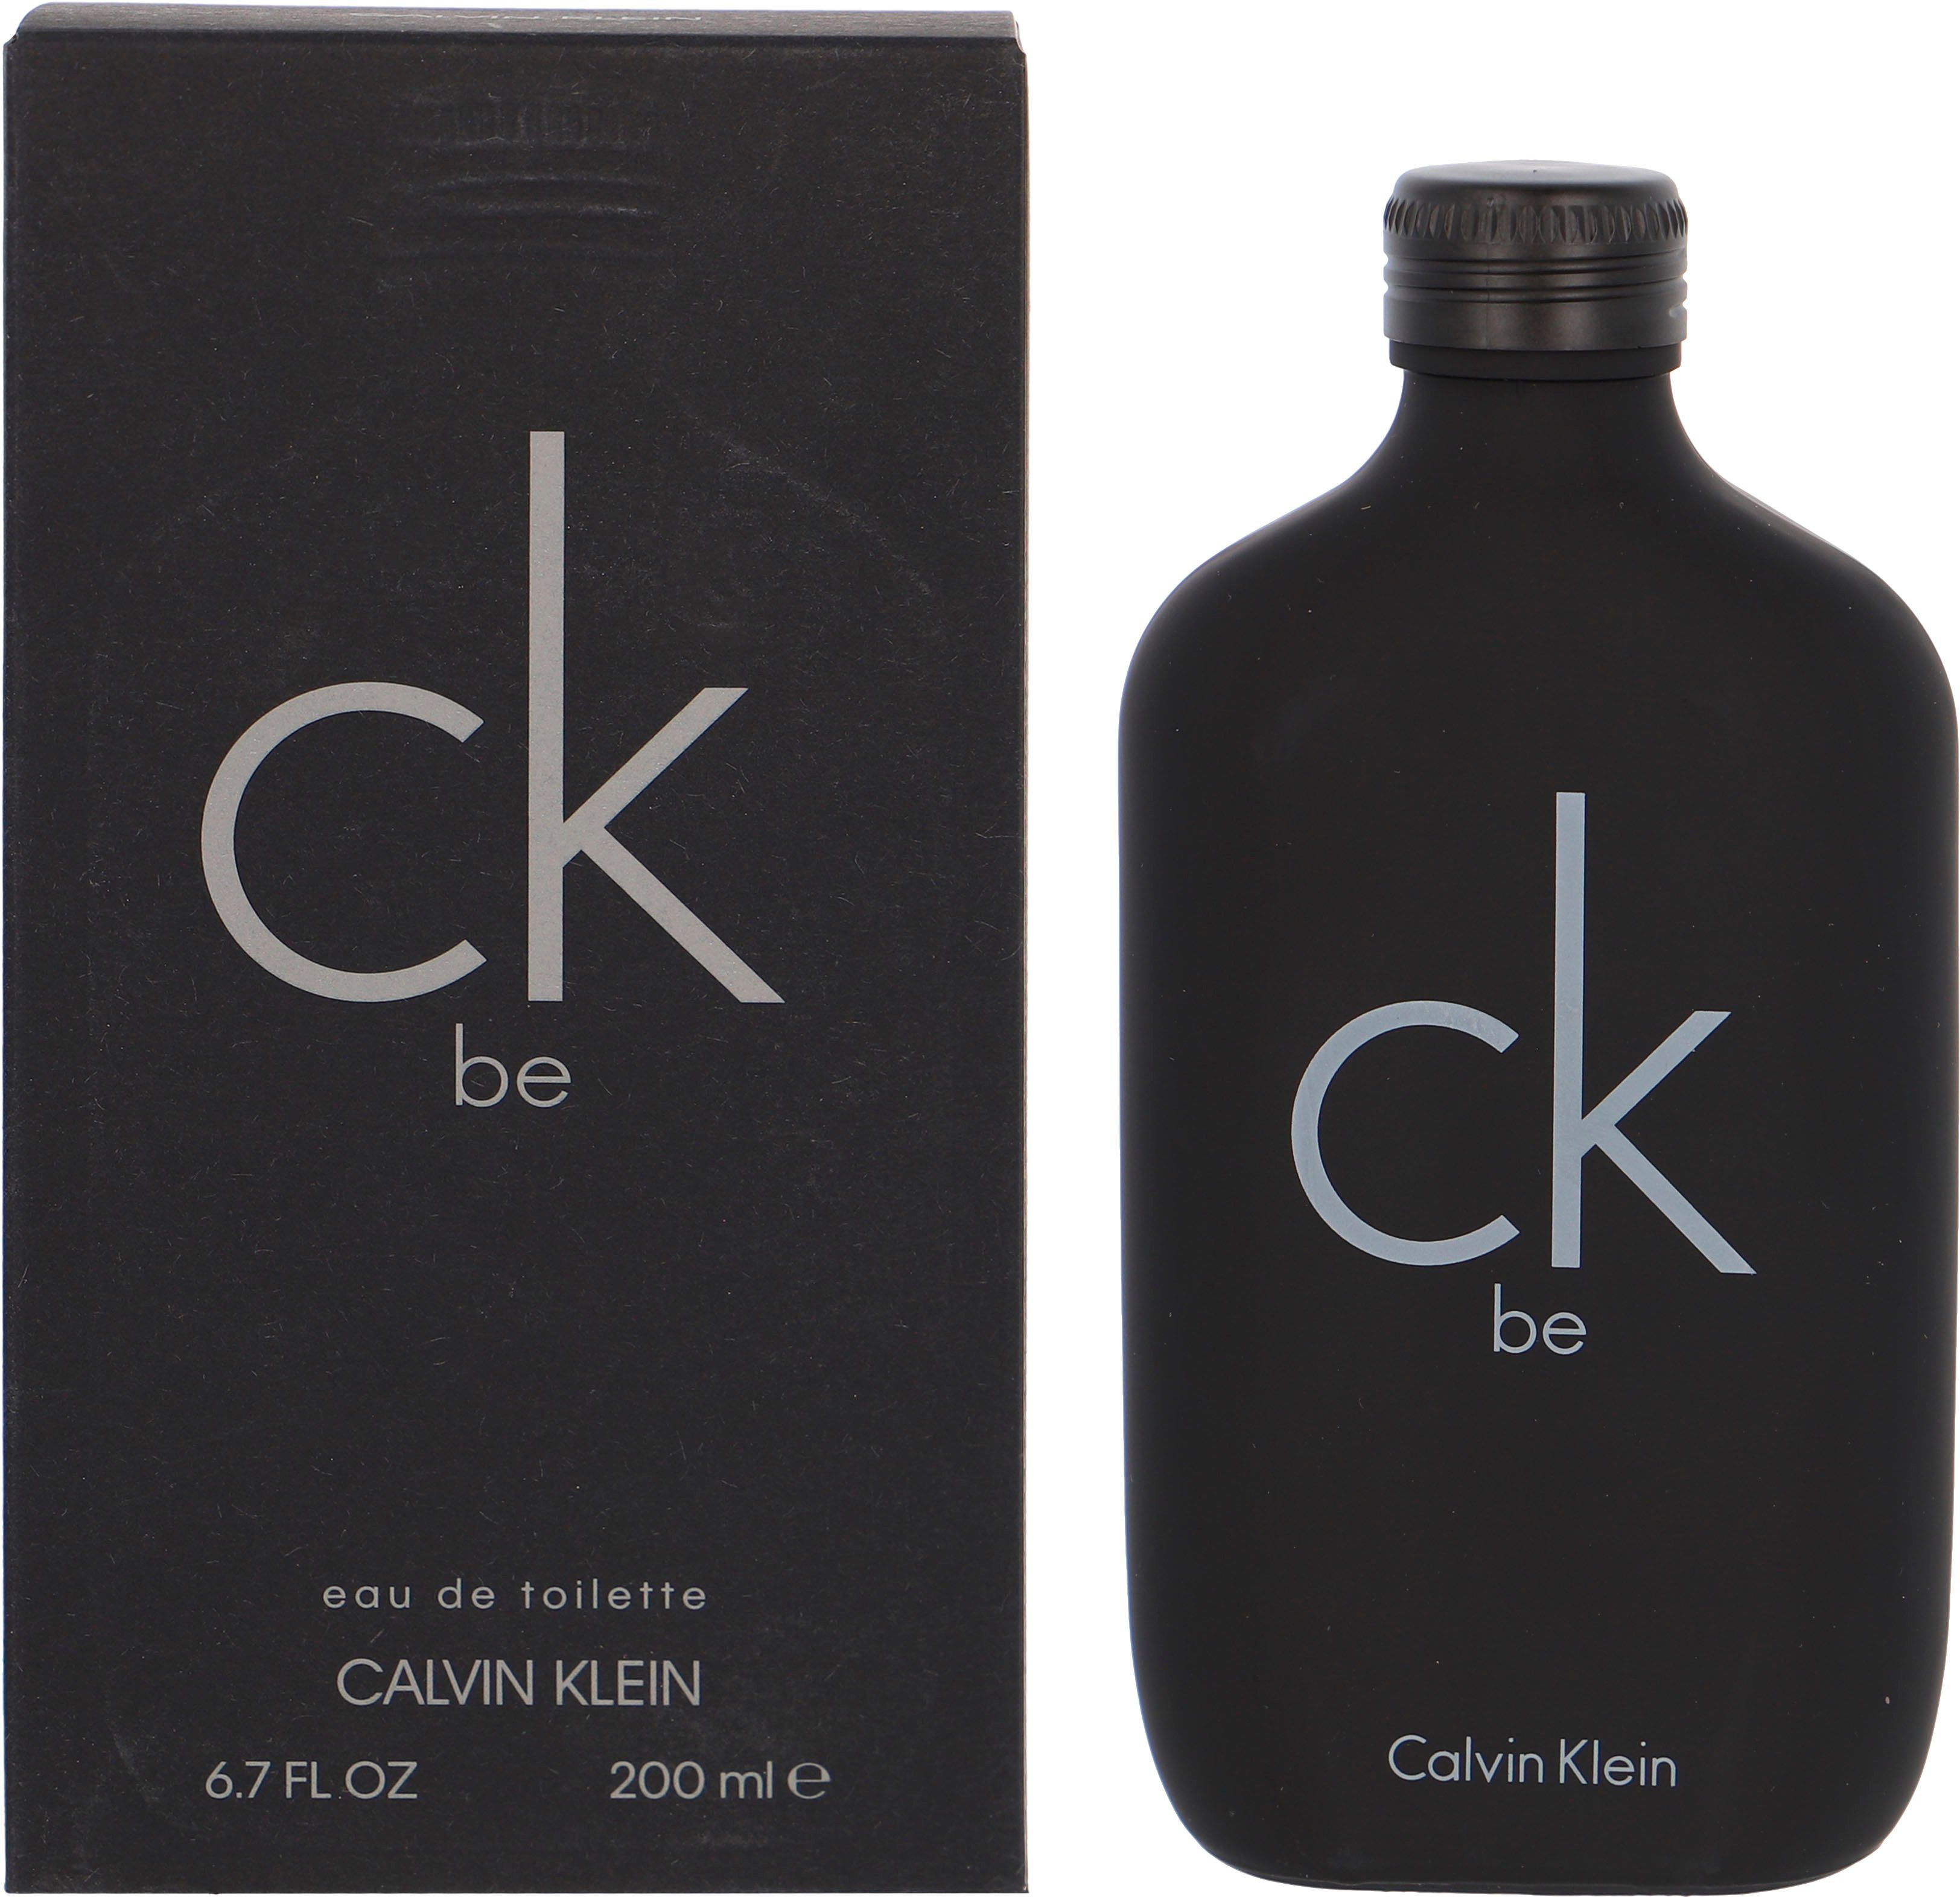 Calvin Klein Eau de Be Toilette